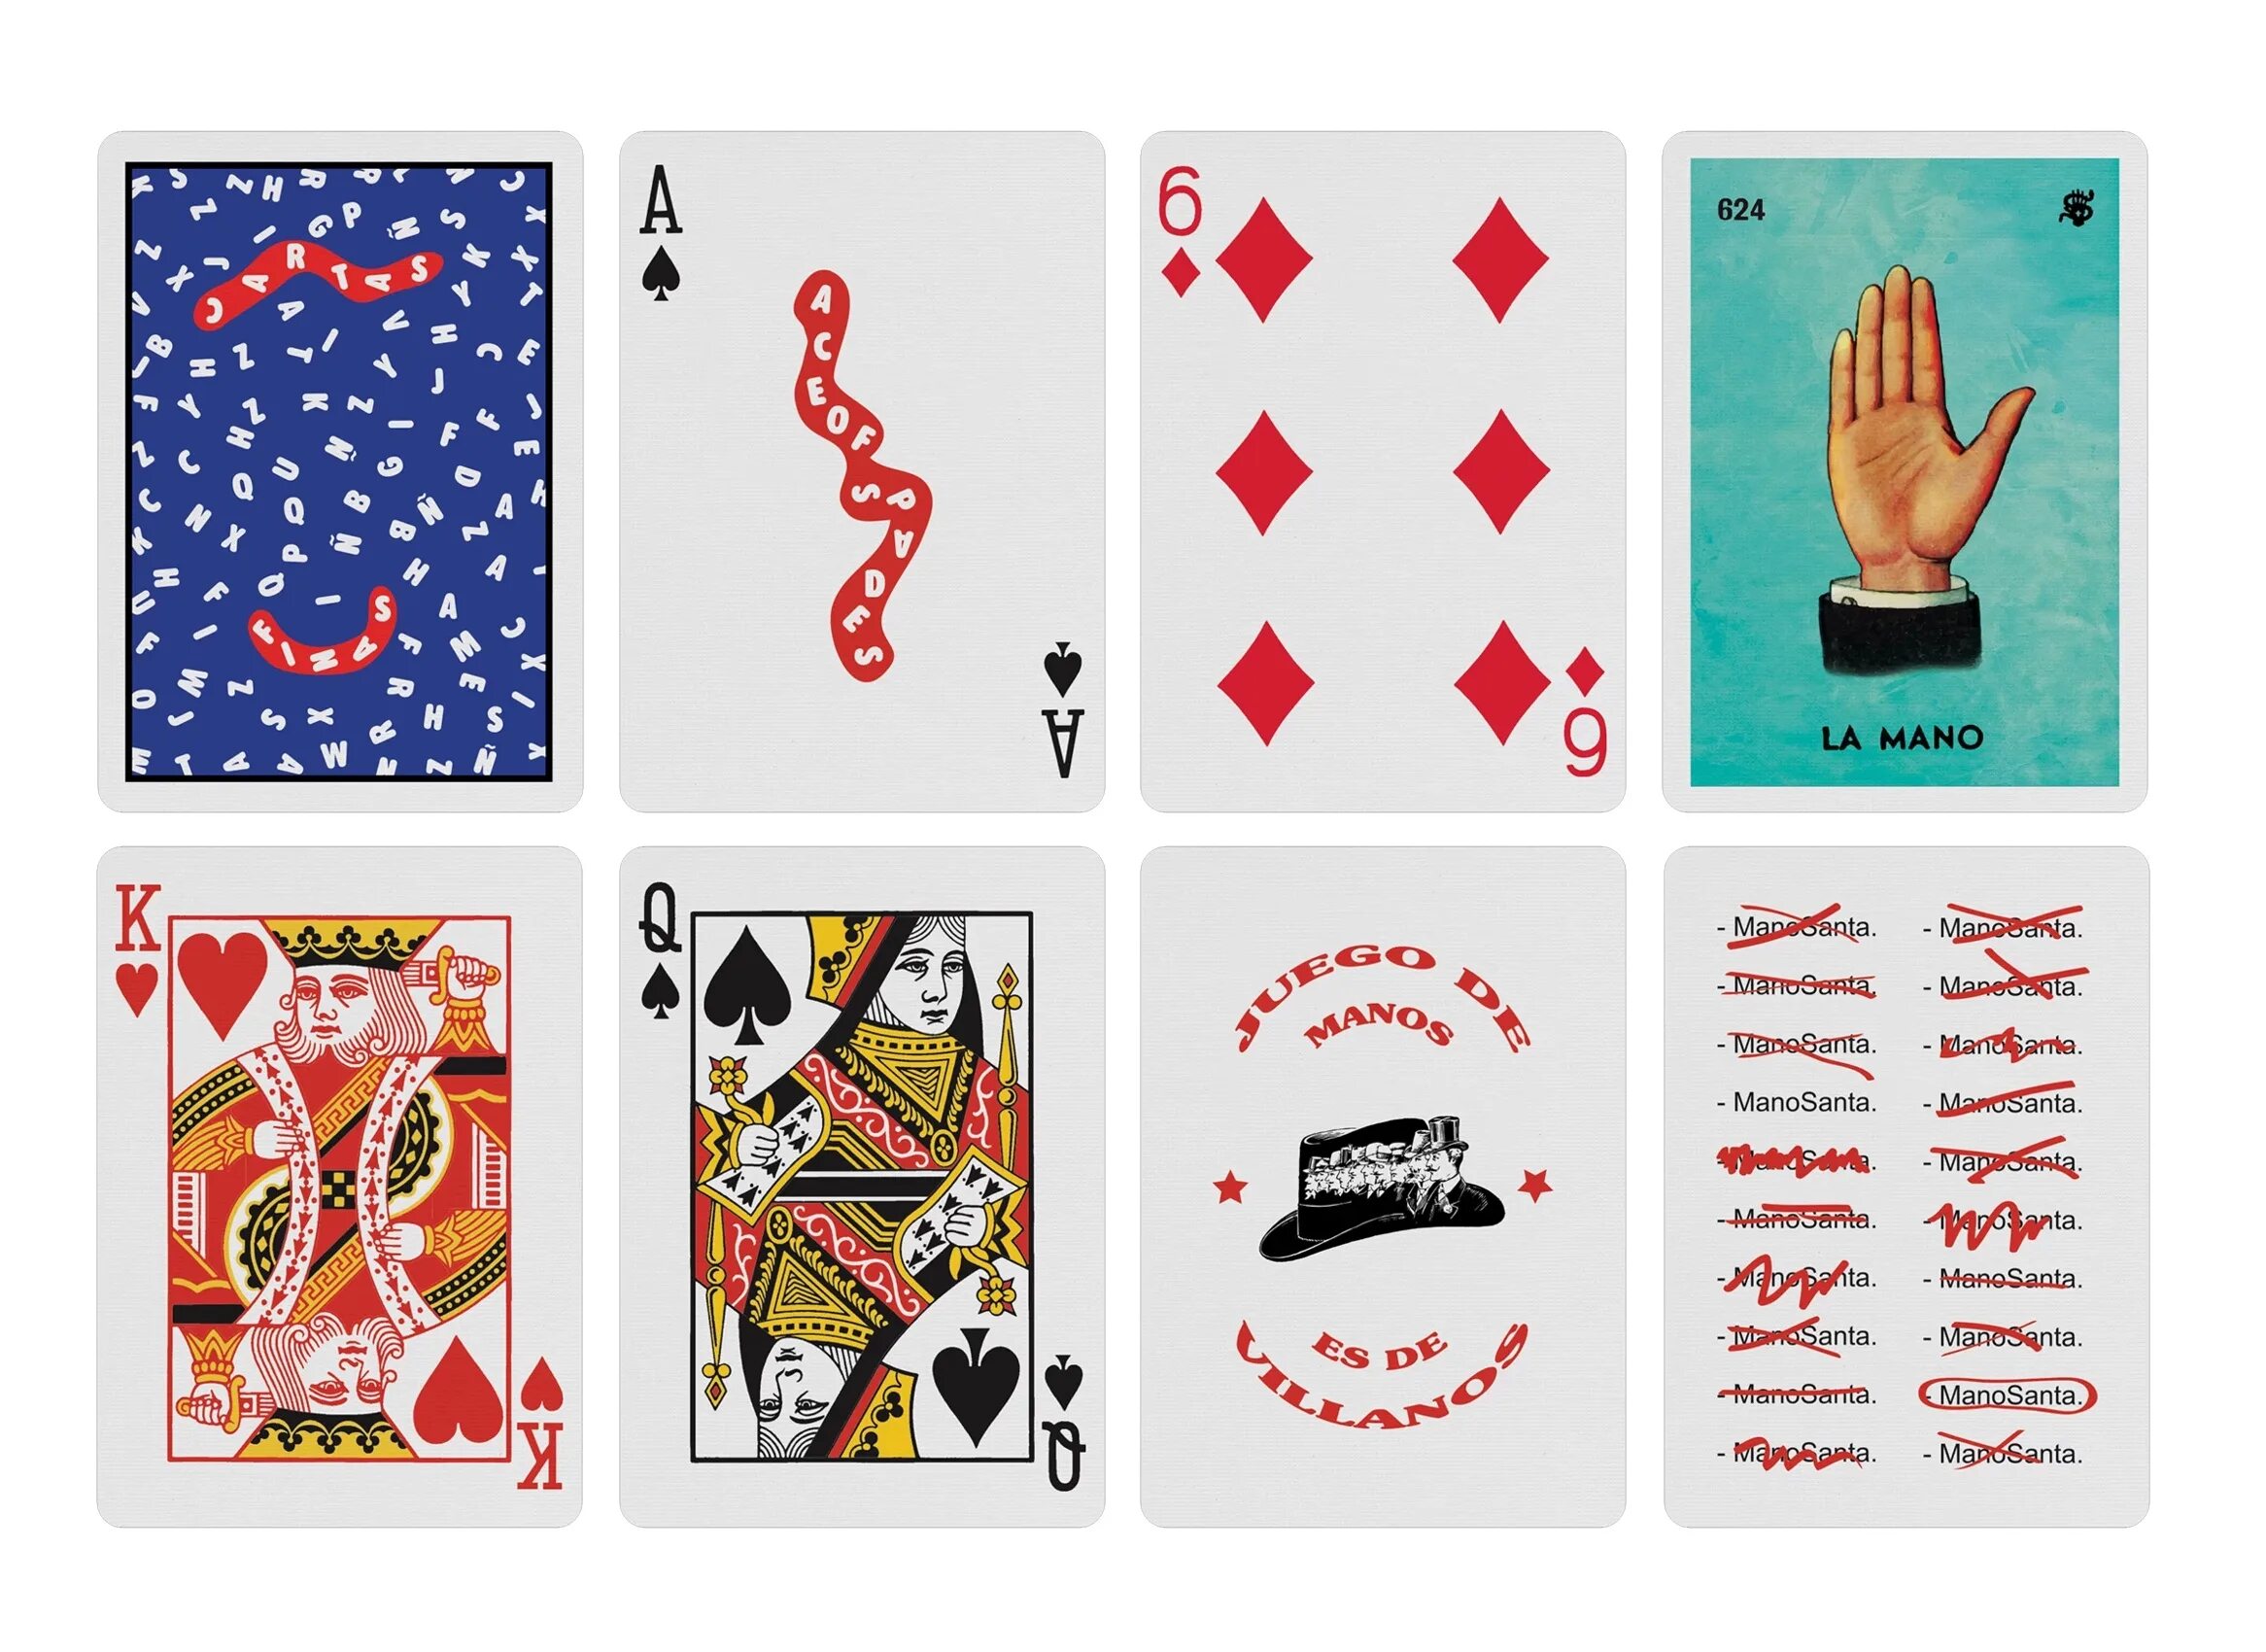 Включи картов. Колода игровых карт для фокусов. Фокус с колодой карт название. Трюки с игральными картами. Колода карт для кардистри.